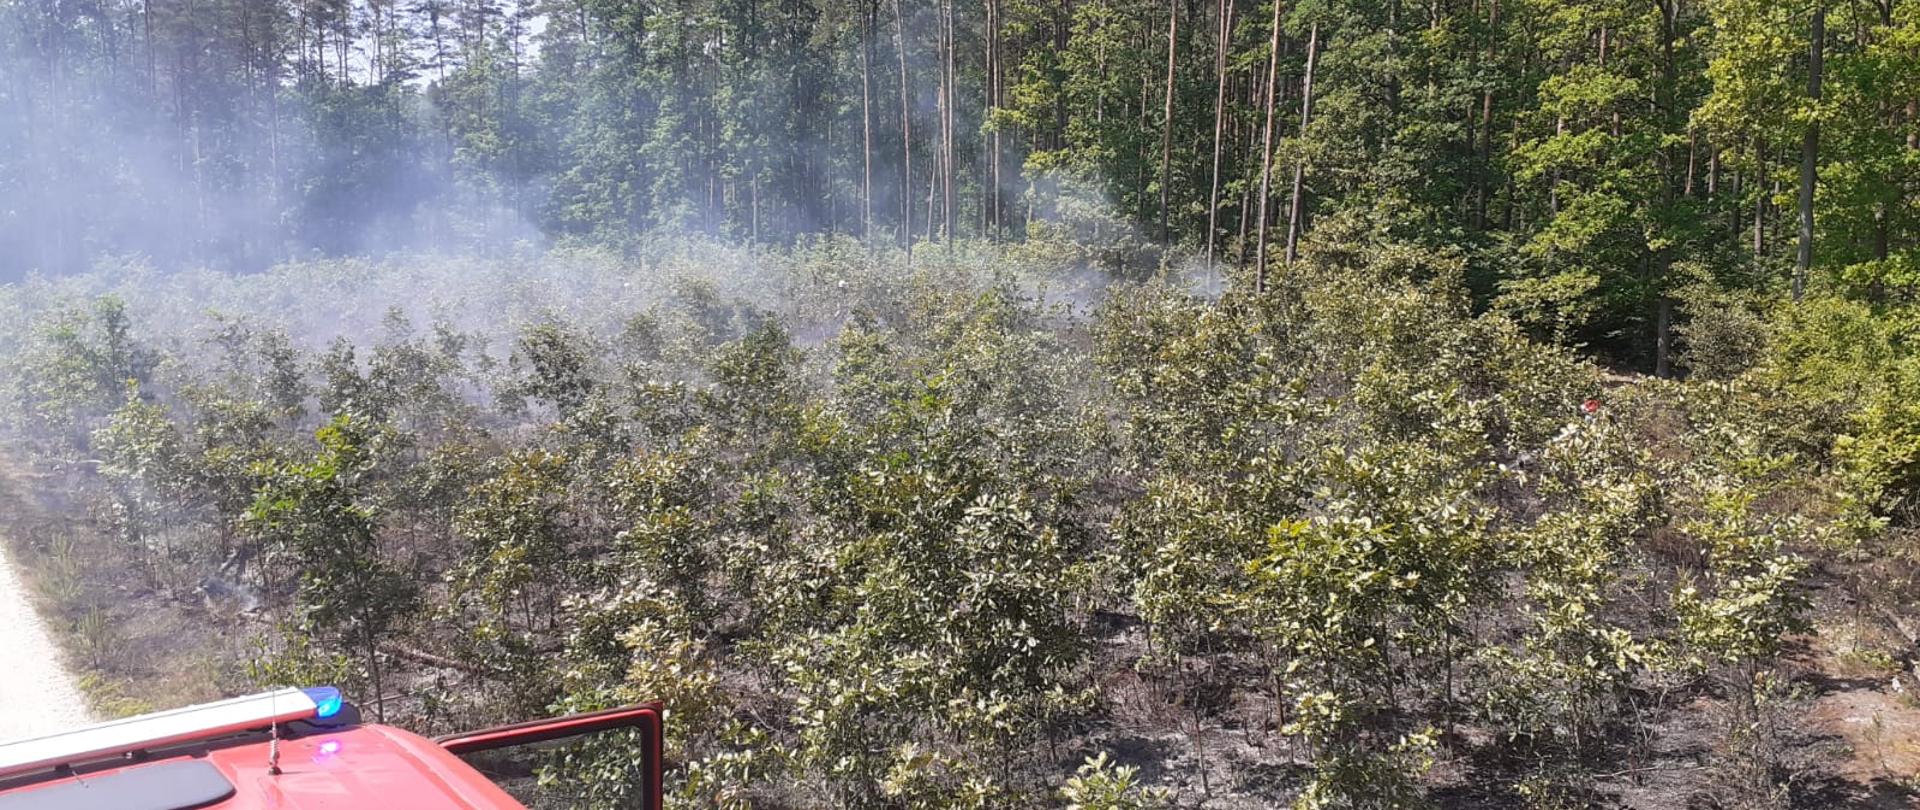 Unoszący się dym nad uprawą leśną